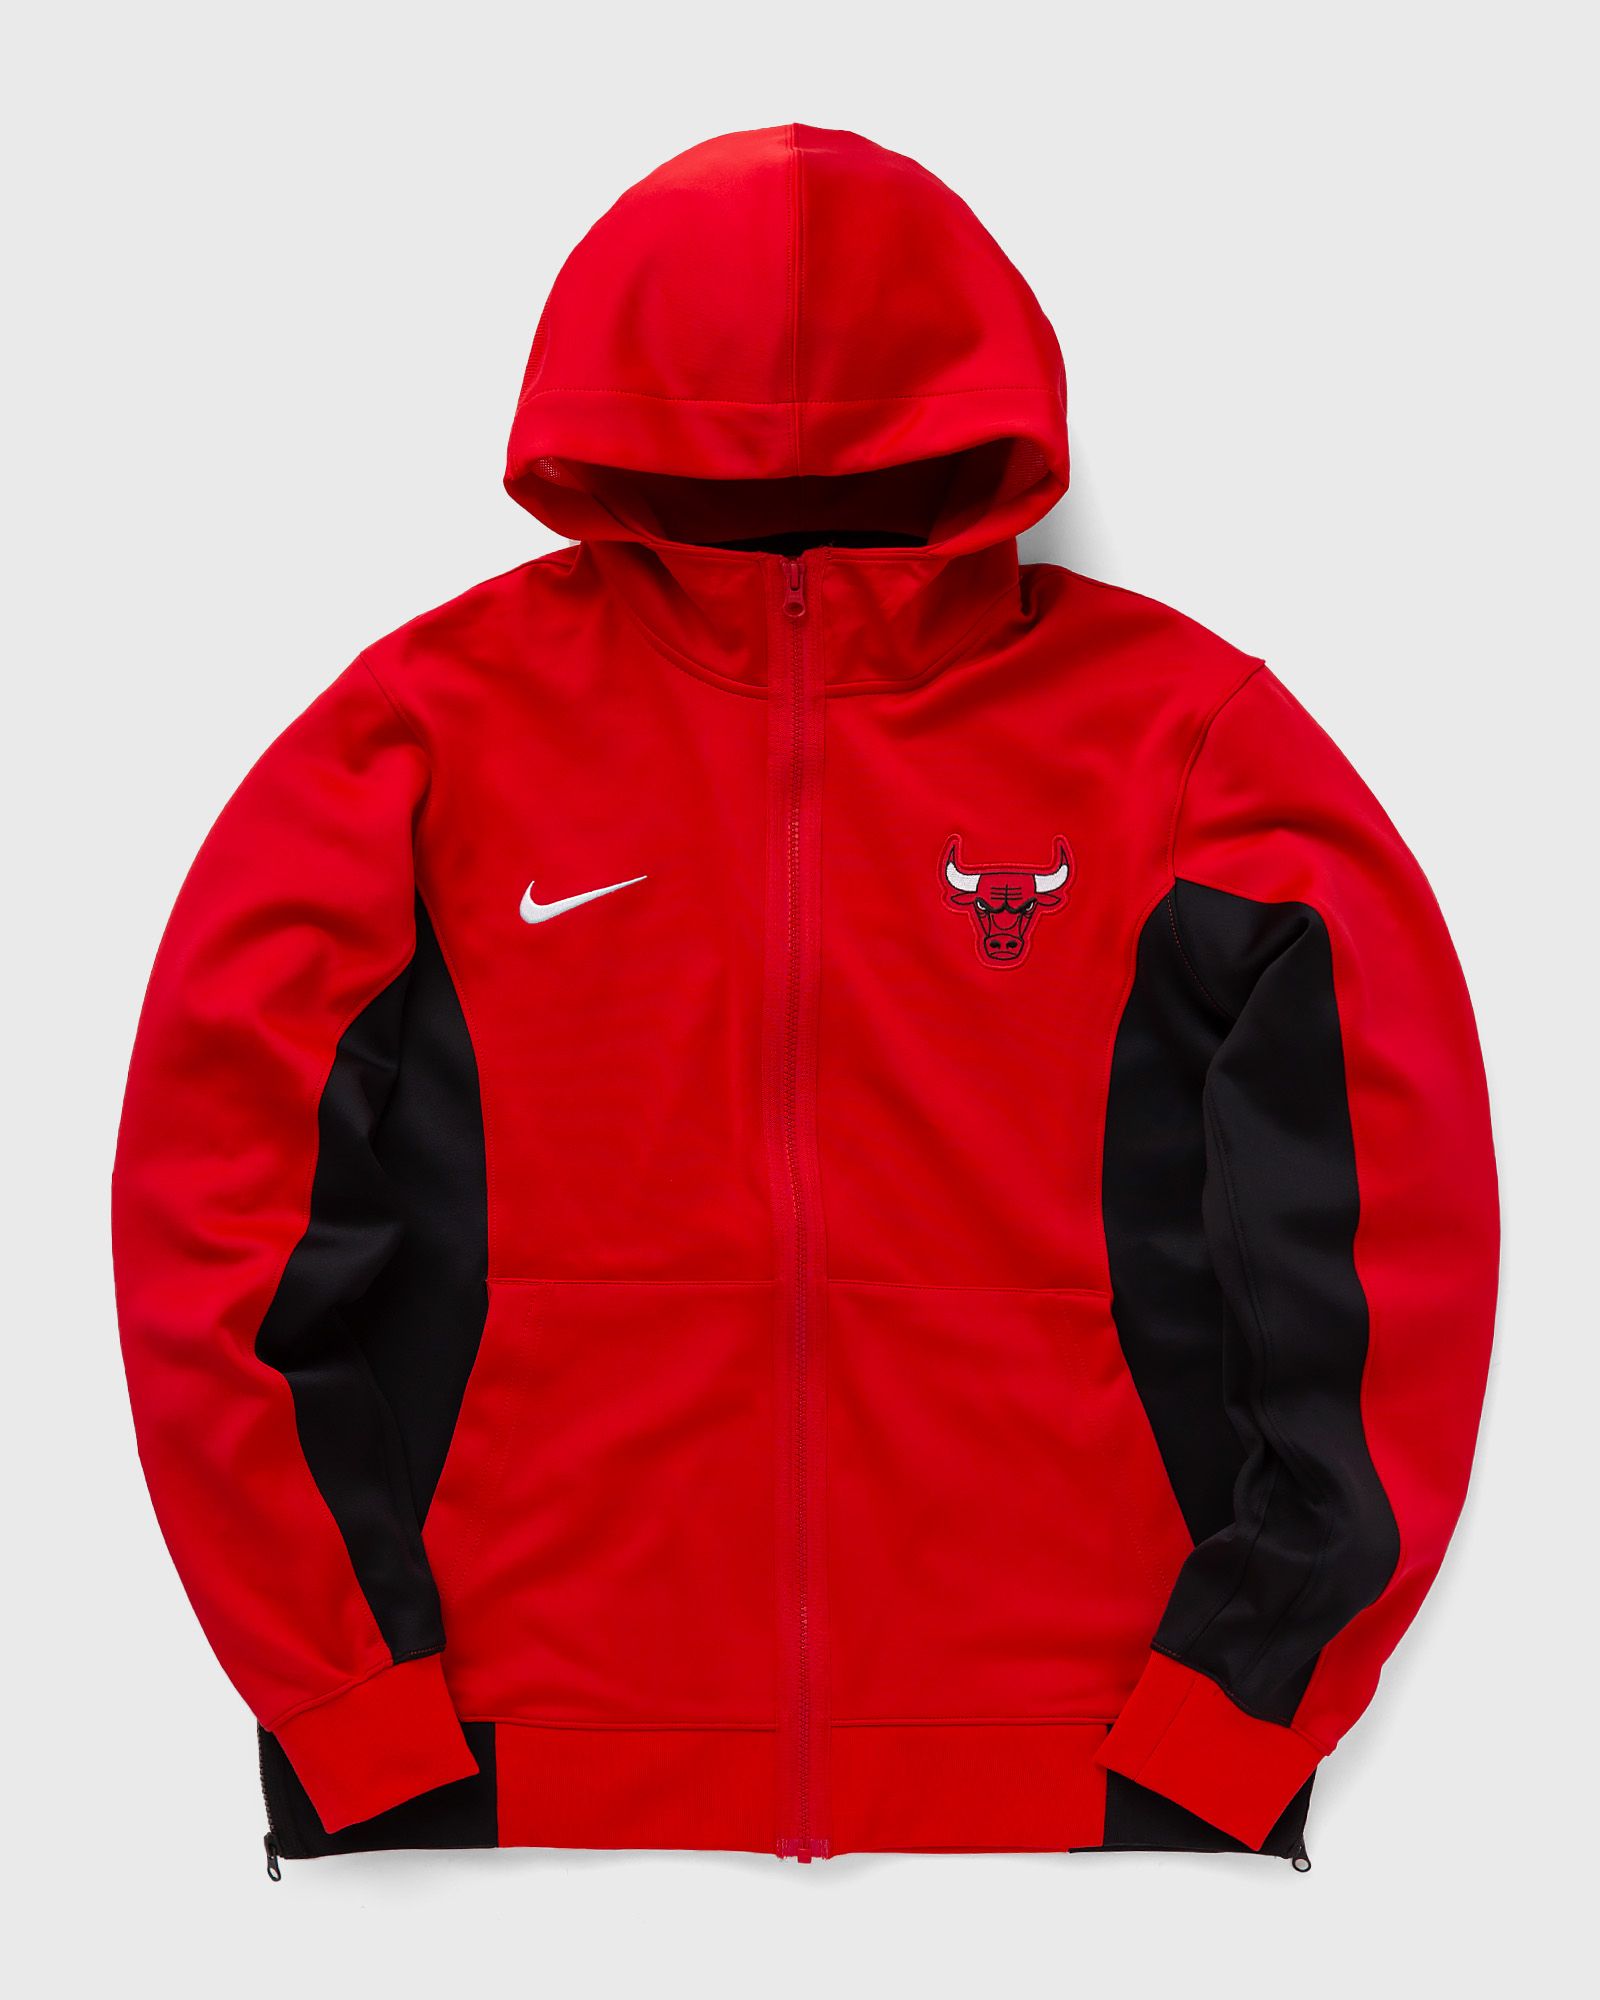 Nike - nba chicago bulls showtime full-zip hoodie men hoodies|team sweats|zippers black|red in größe:xl